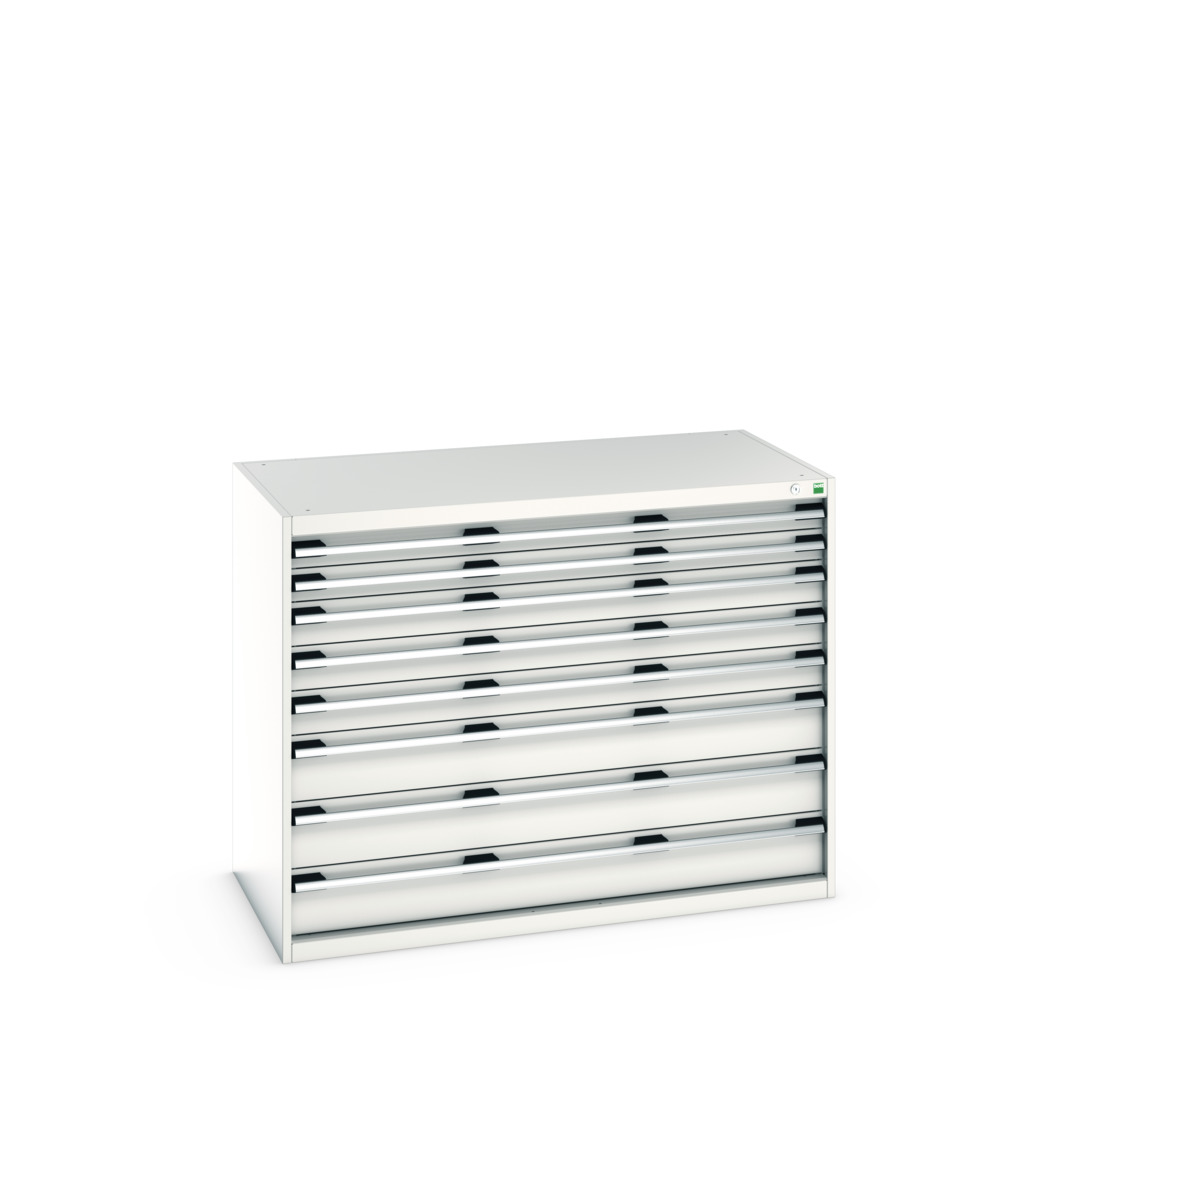 40030019.16V - cubio drawer cabinet